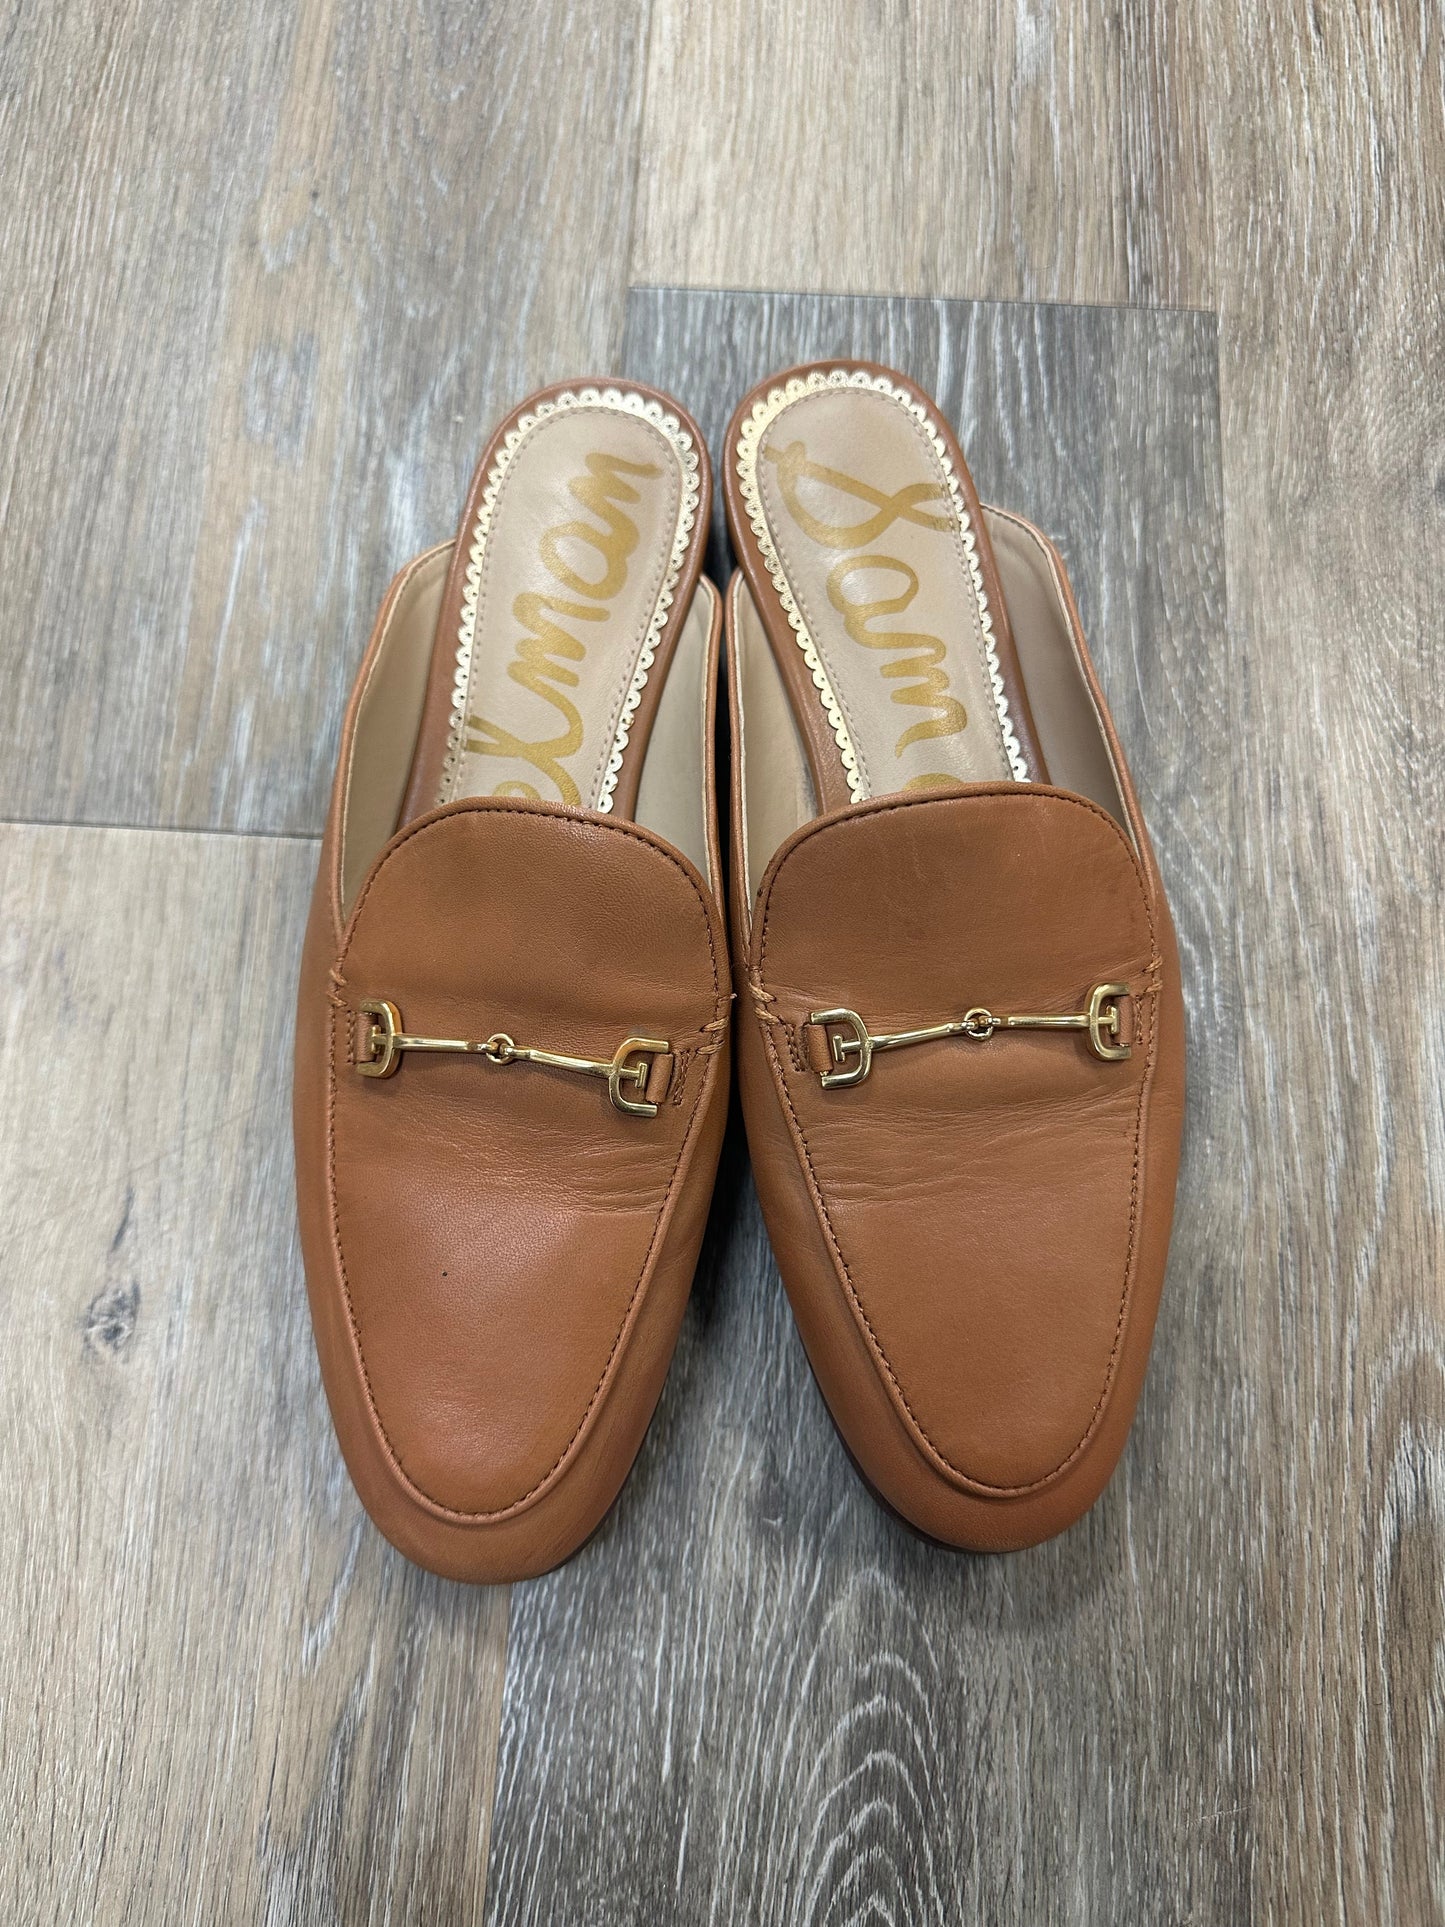 Tan Shoes Flats Sam Edelman, Size 7.5